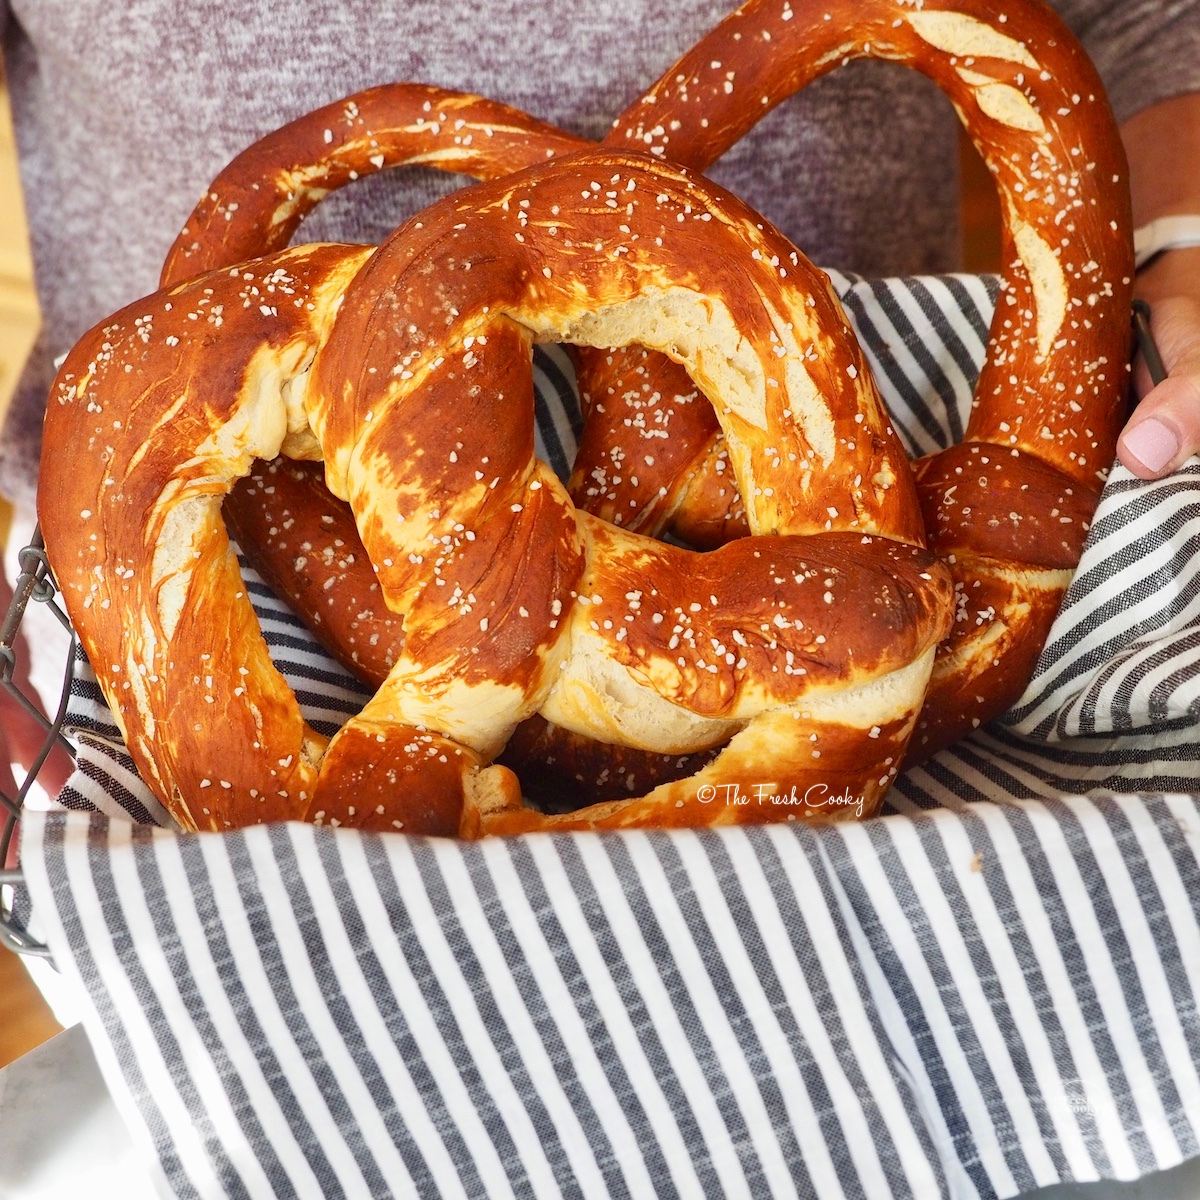 Giant soft pretzels in basket for serving.